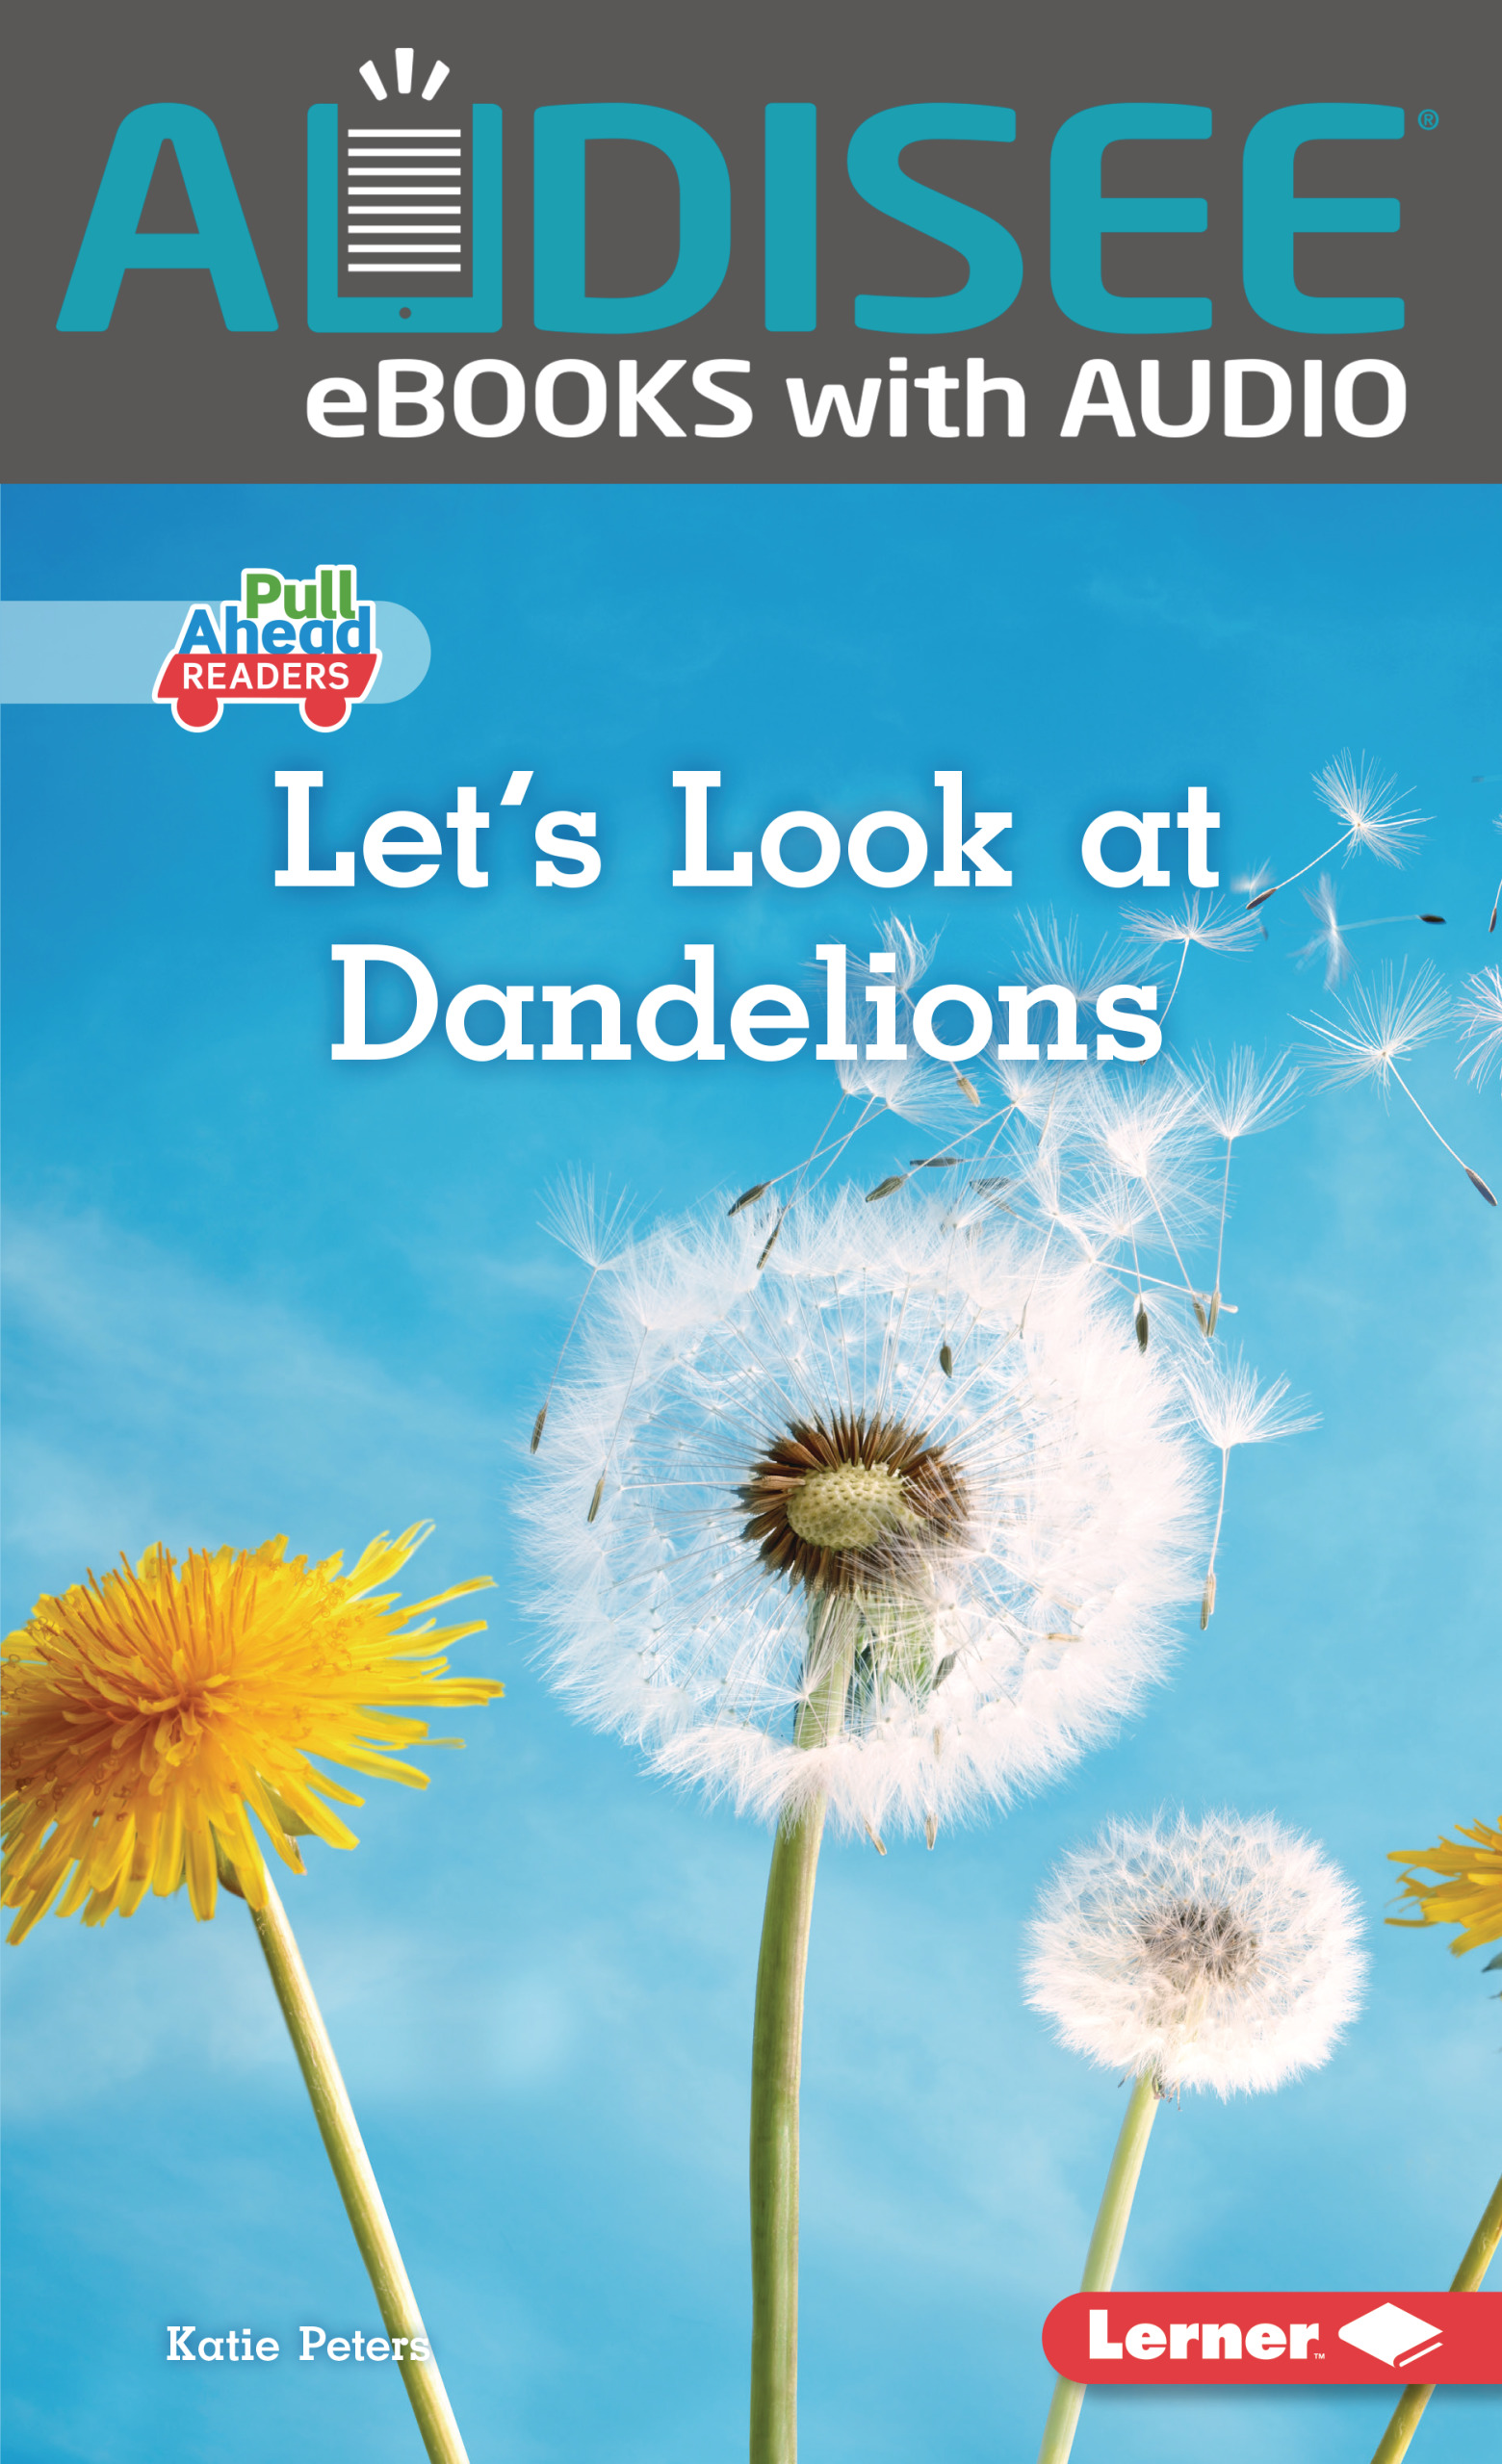 Let's Look at Dandelions